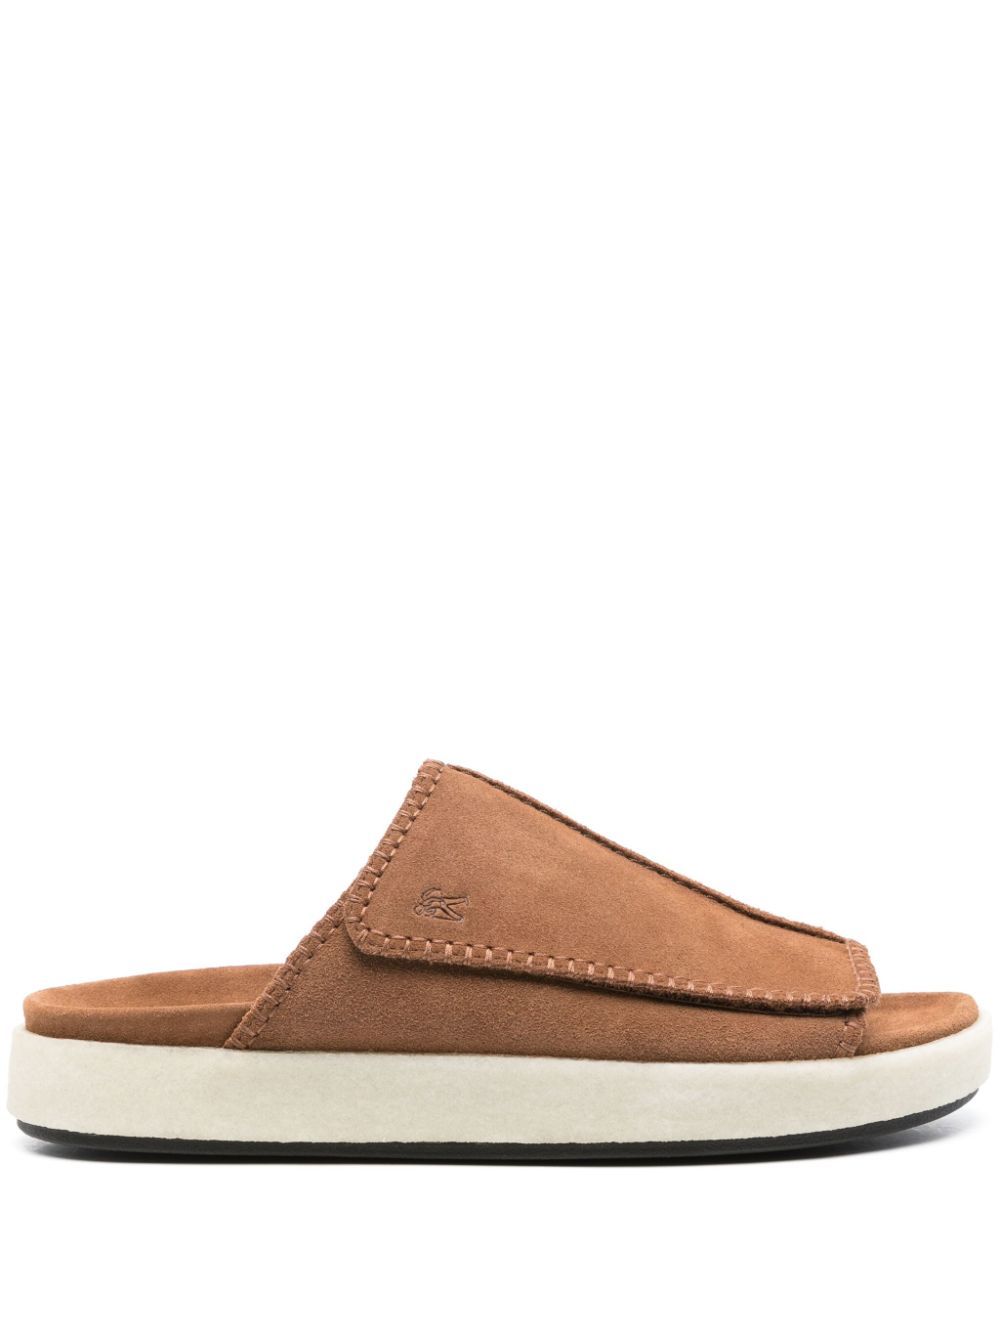 Clarks Originals Overleigh Flat Sandals In Brown